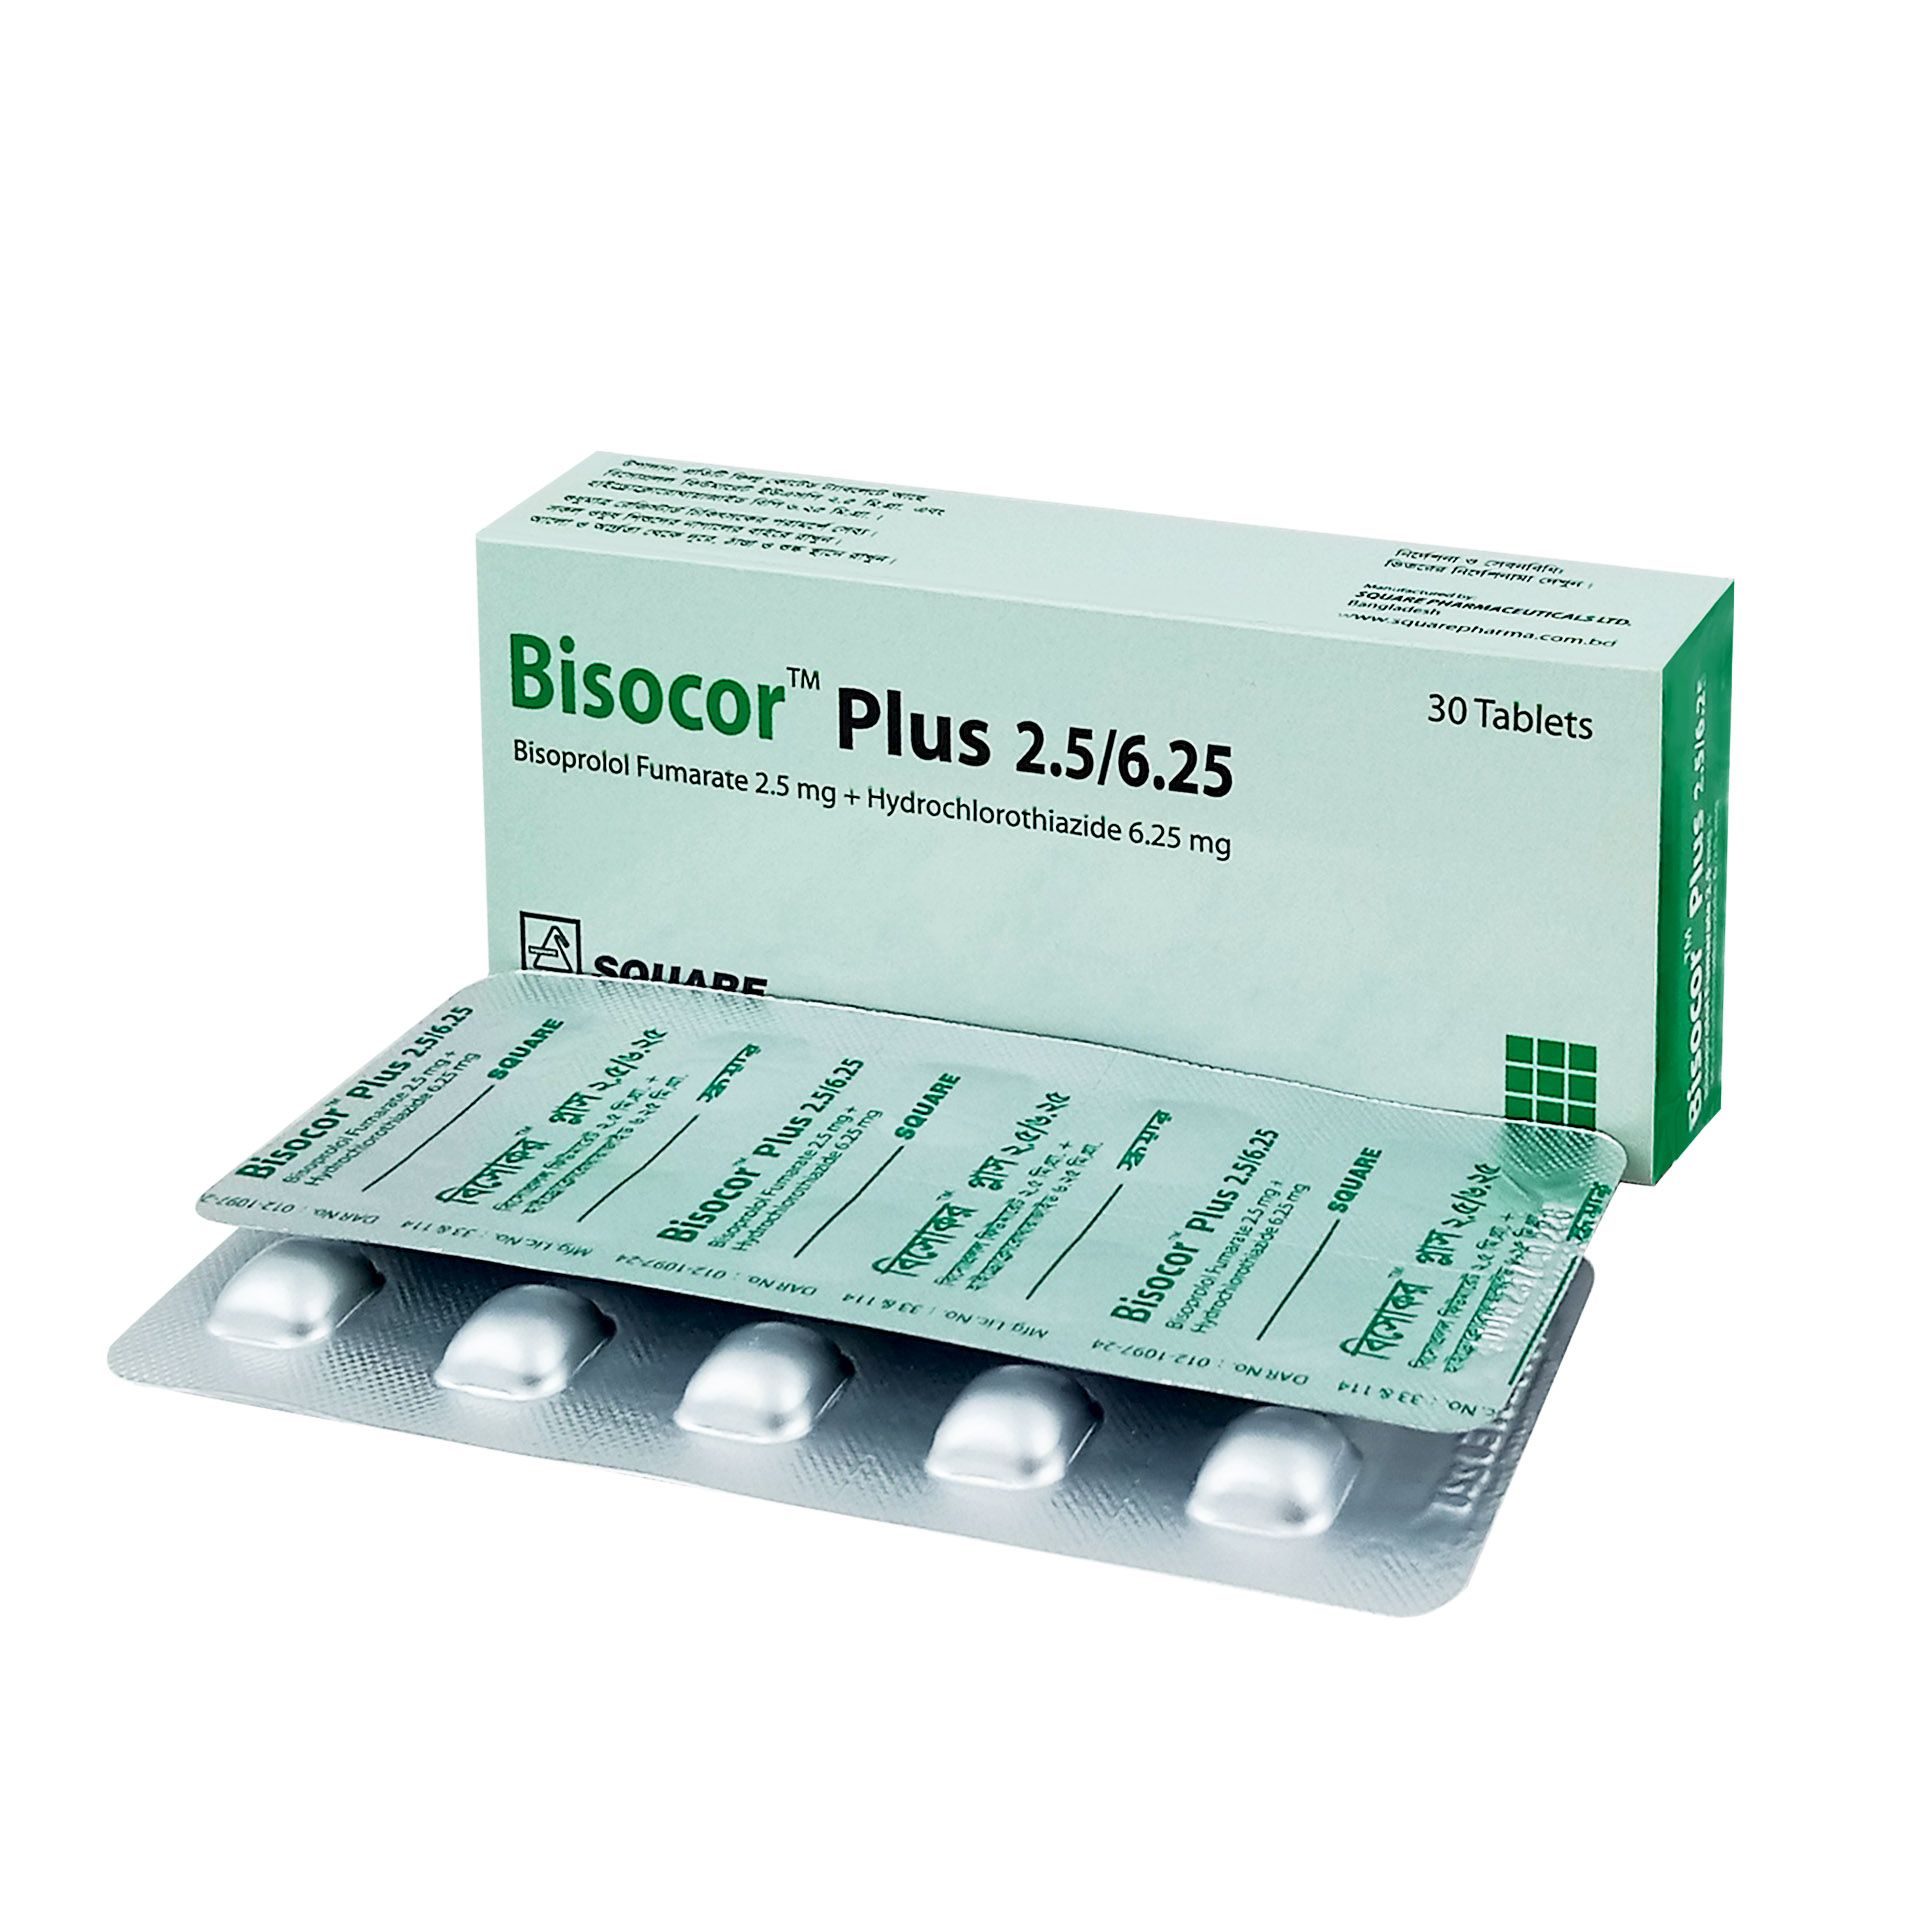 Bisocor Plus 2.5/6.25 2.5mg+6.25mg Tablet